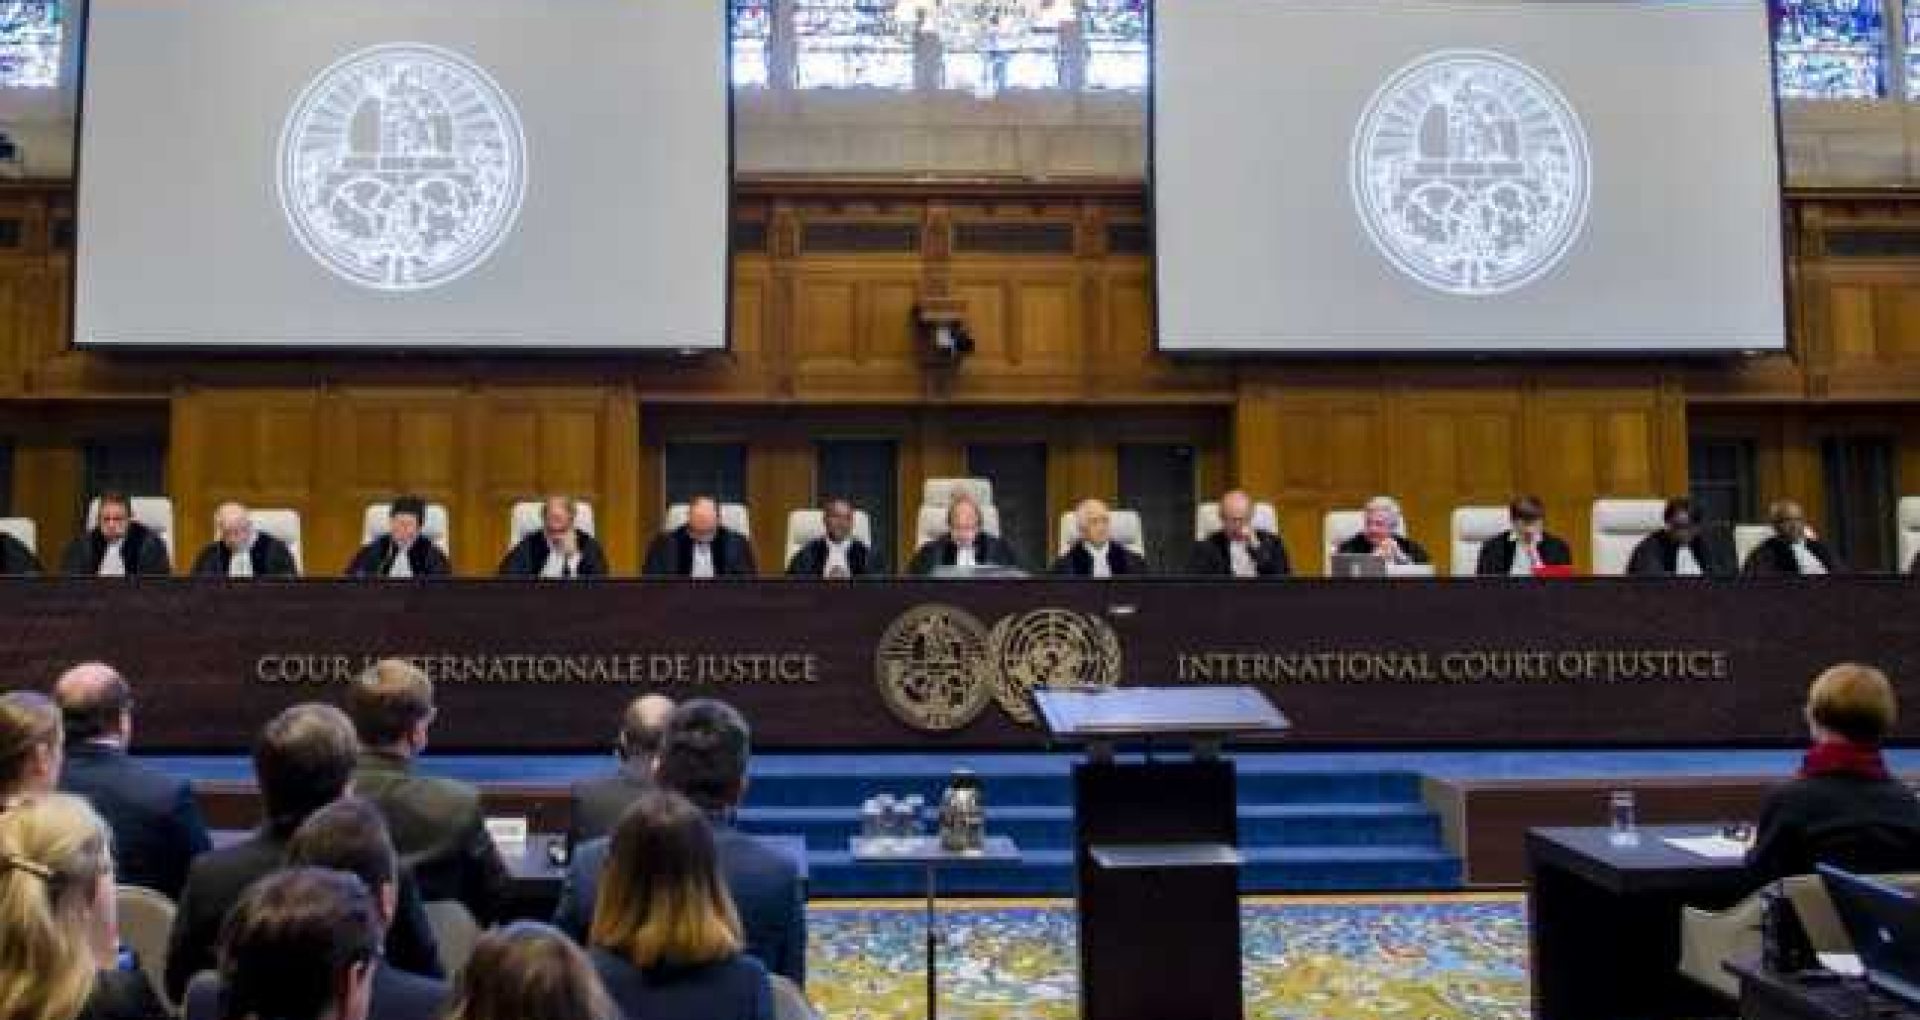 România a luat decizia de a interveni în favoarea Ucrainei la Curtea Internațională de Justiție, în cadrul procedurilor lansate împotriva Federației Ruse